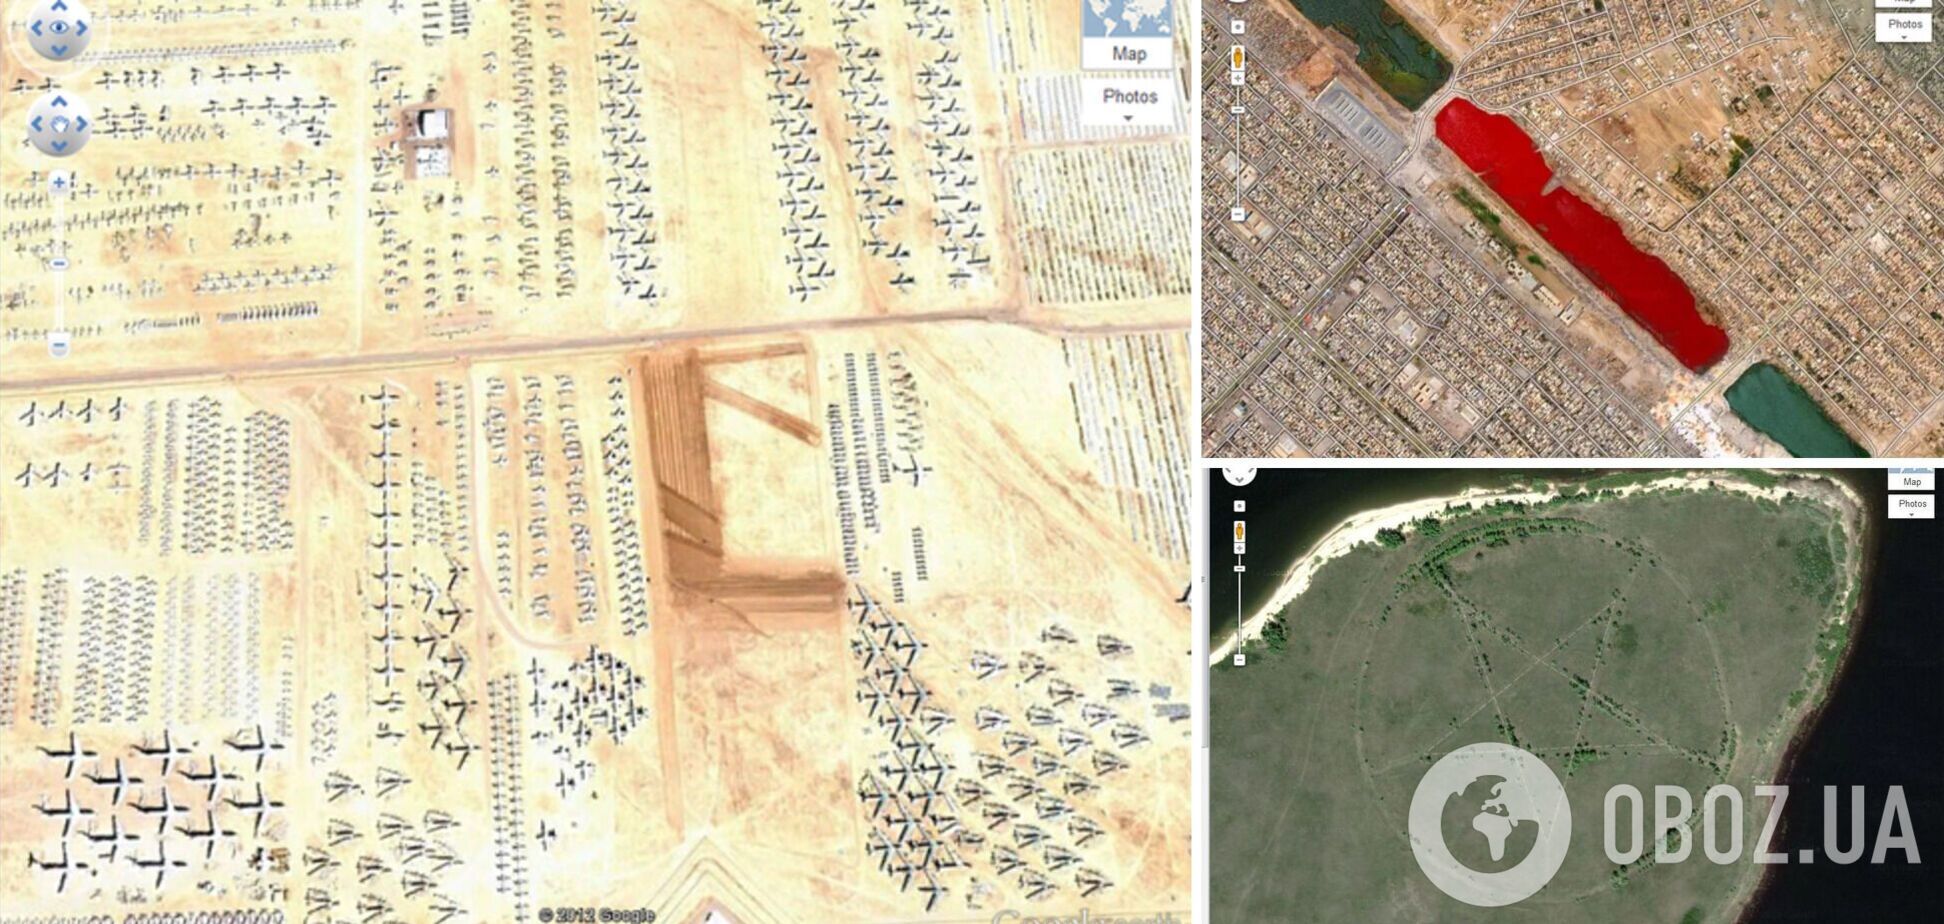 Новые пирамиды в Египте и озеро крови: названы самые удивительные находки в Google Earth